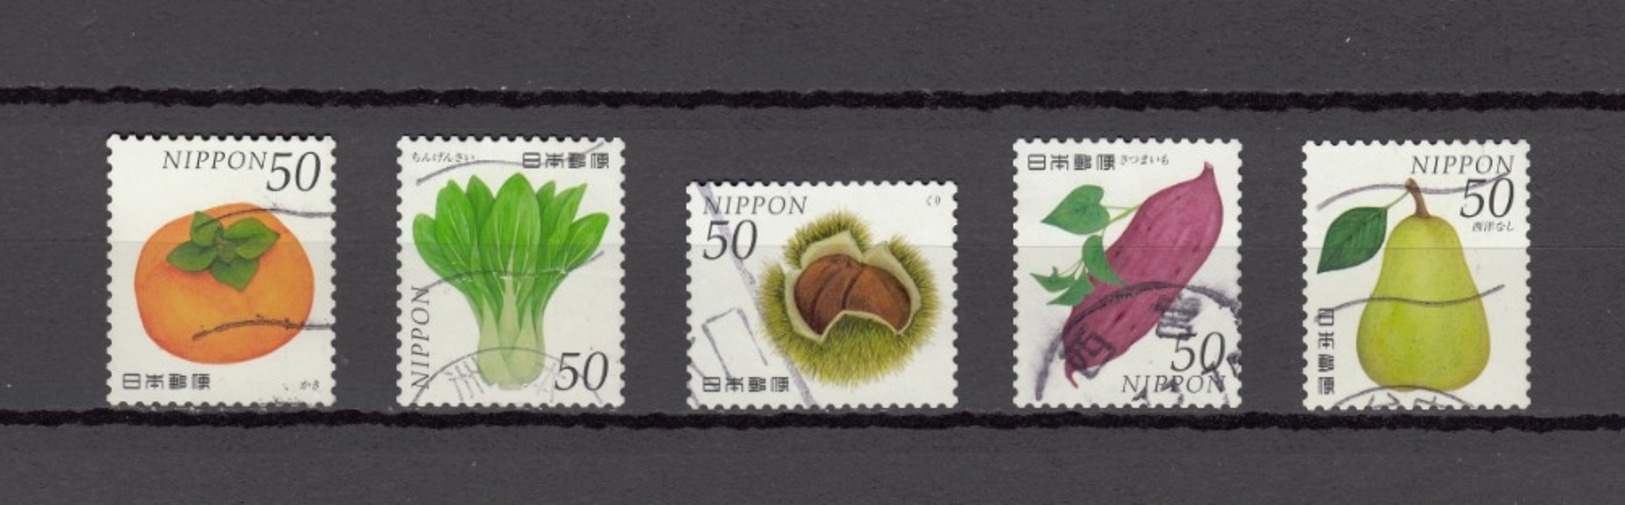 Japan 2013 - Vegetables & Fruits Series 1 52 Yen, Michelnr. 6502-06 - Gebruikt